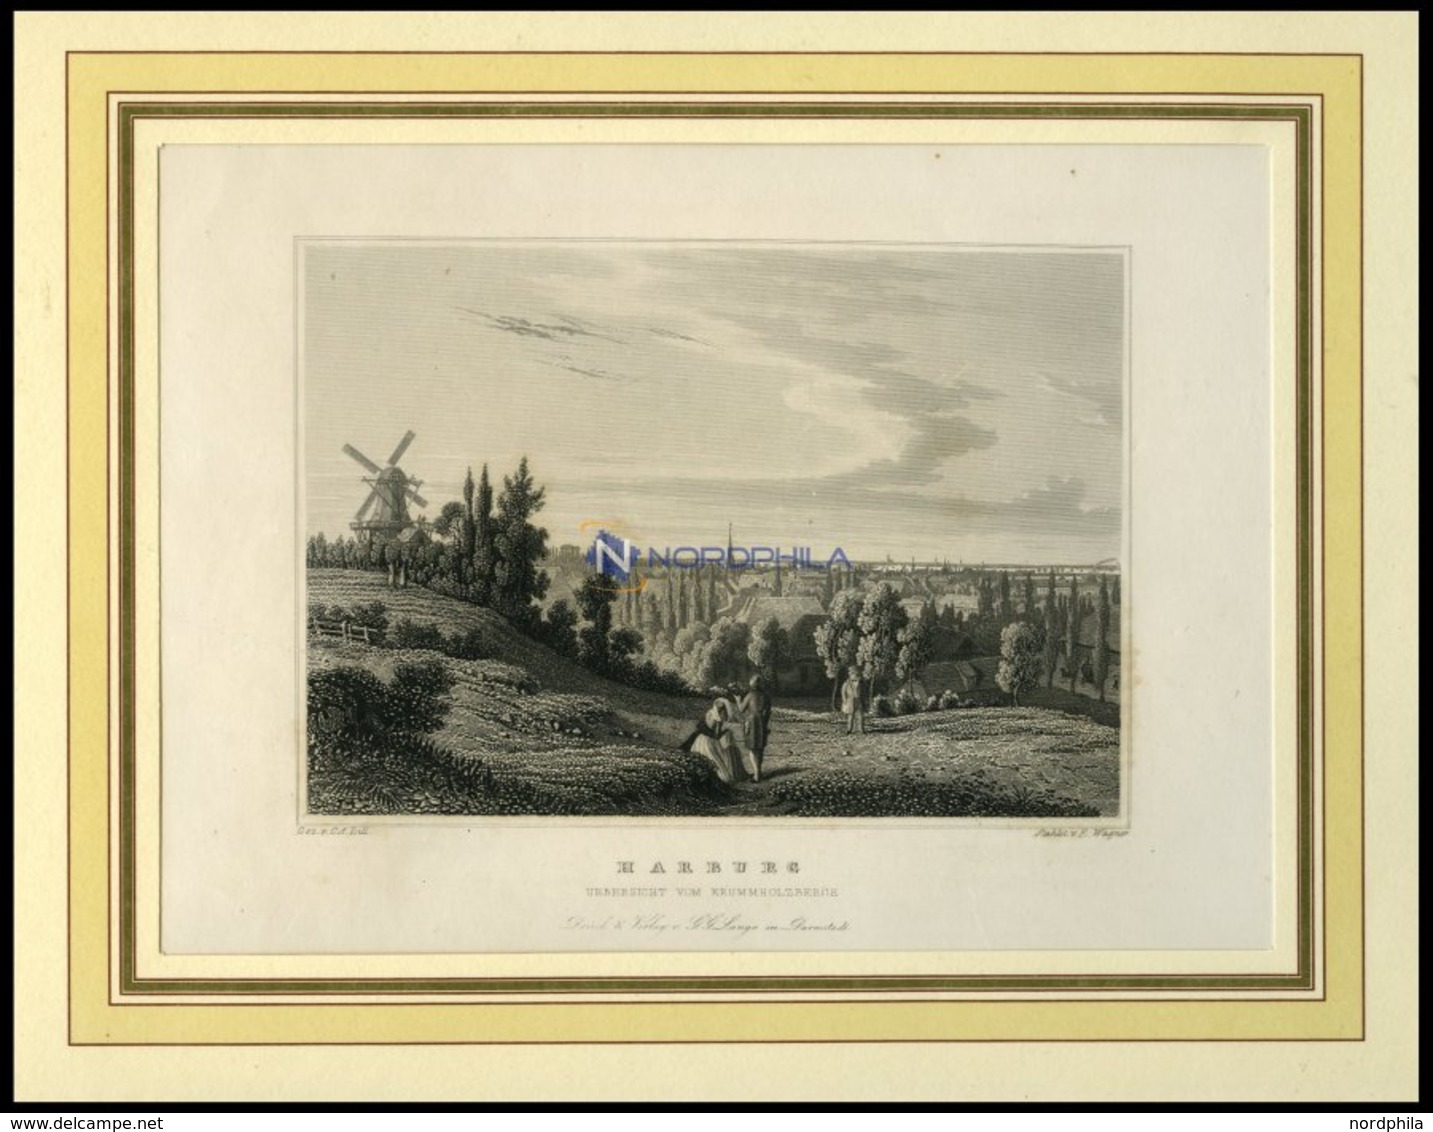 HAMBURG-HARBURG, Gesamtansicht Vom Krummholzberg, Stahlstich Von Lill/Wagner Um 1840 - Litografia